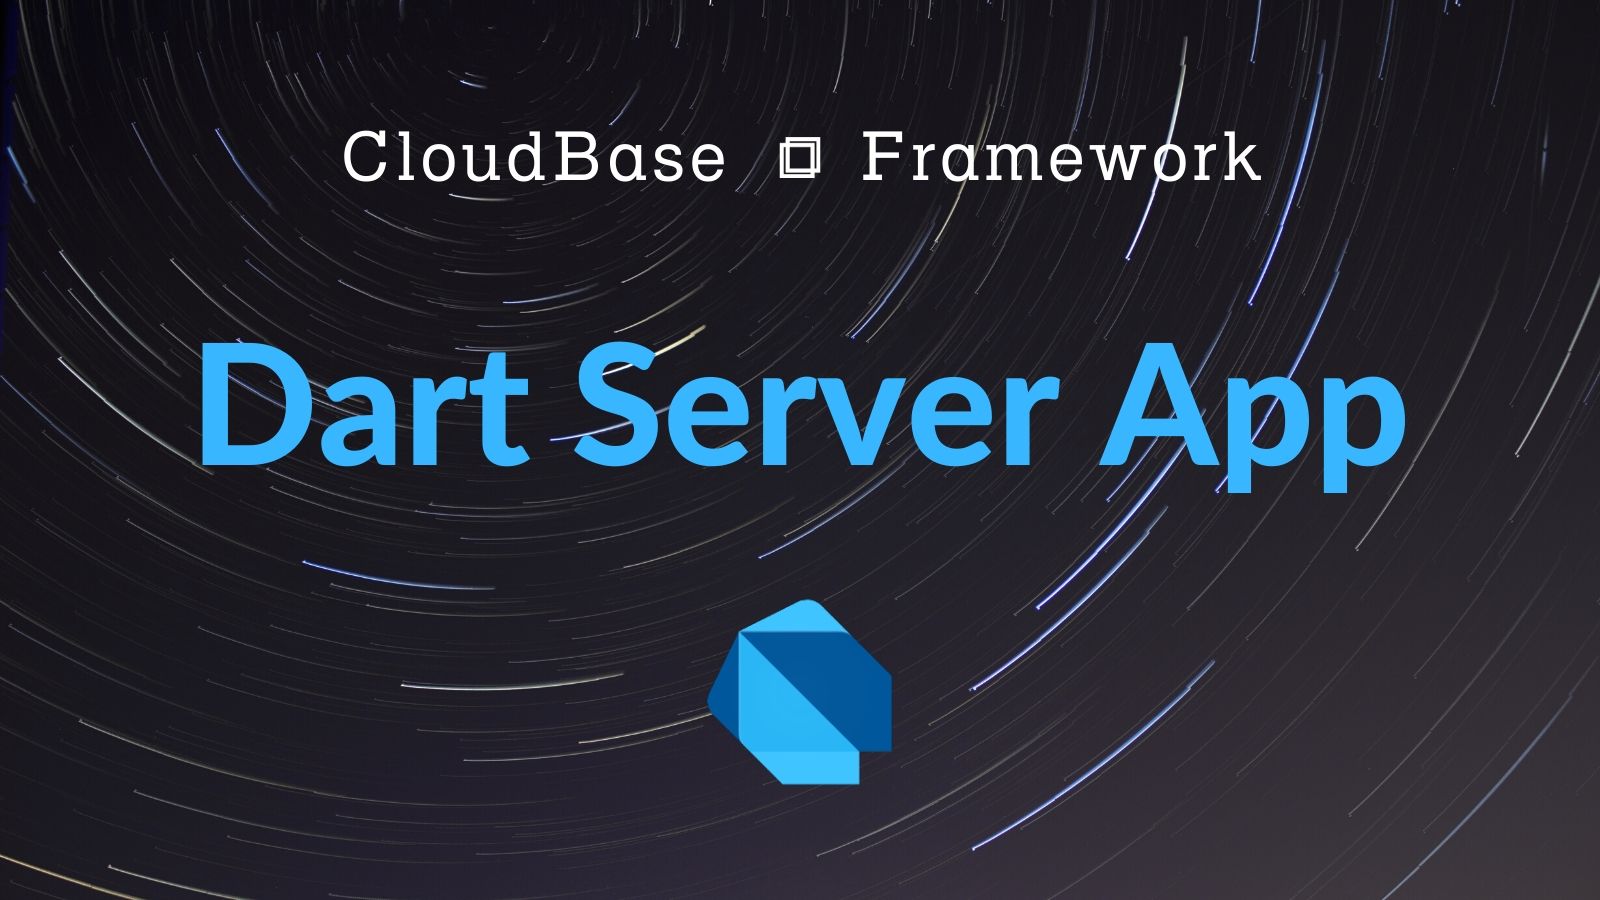 Tencent CloudBase Framework Function Plugin